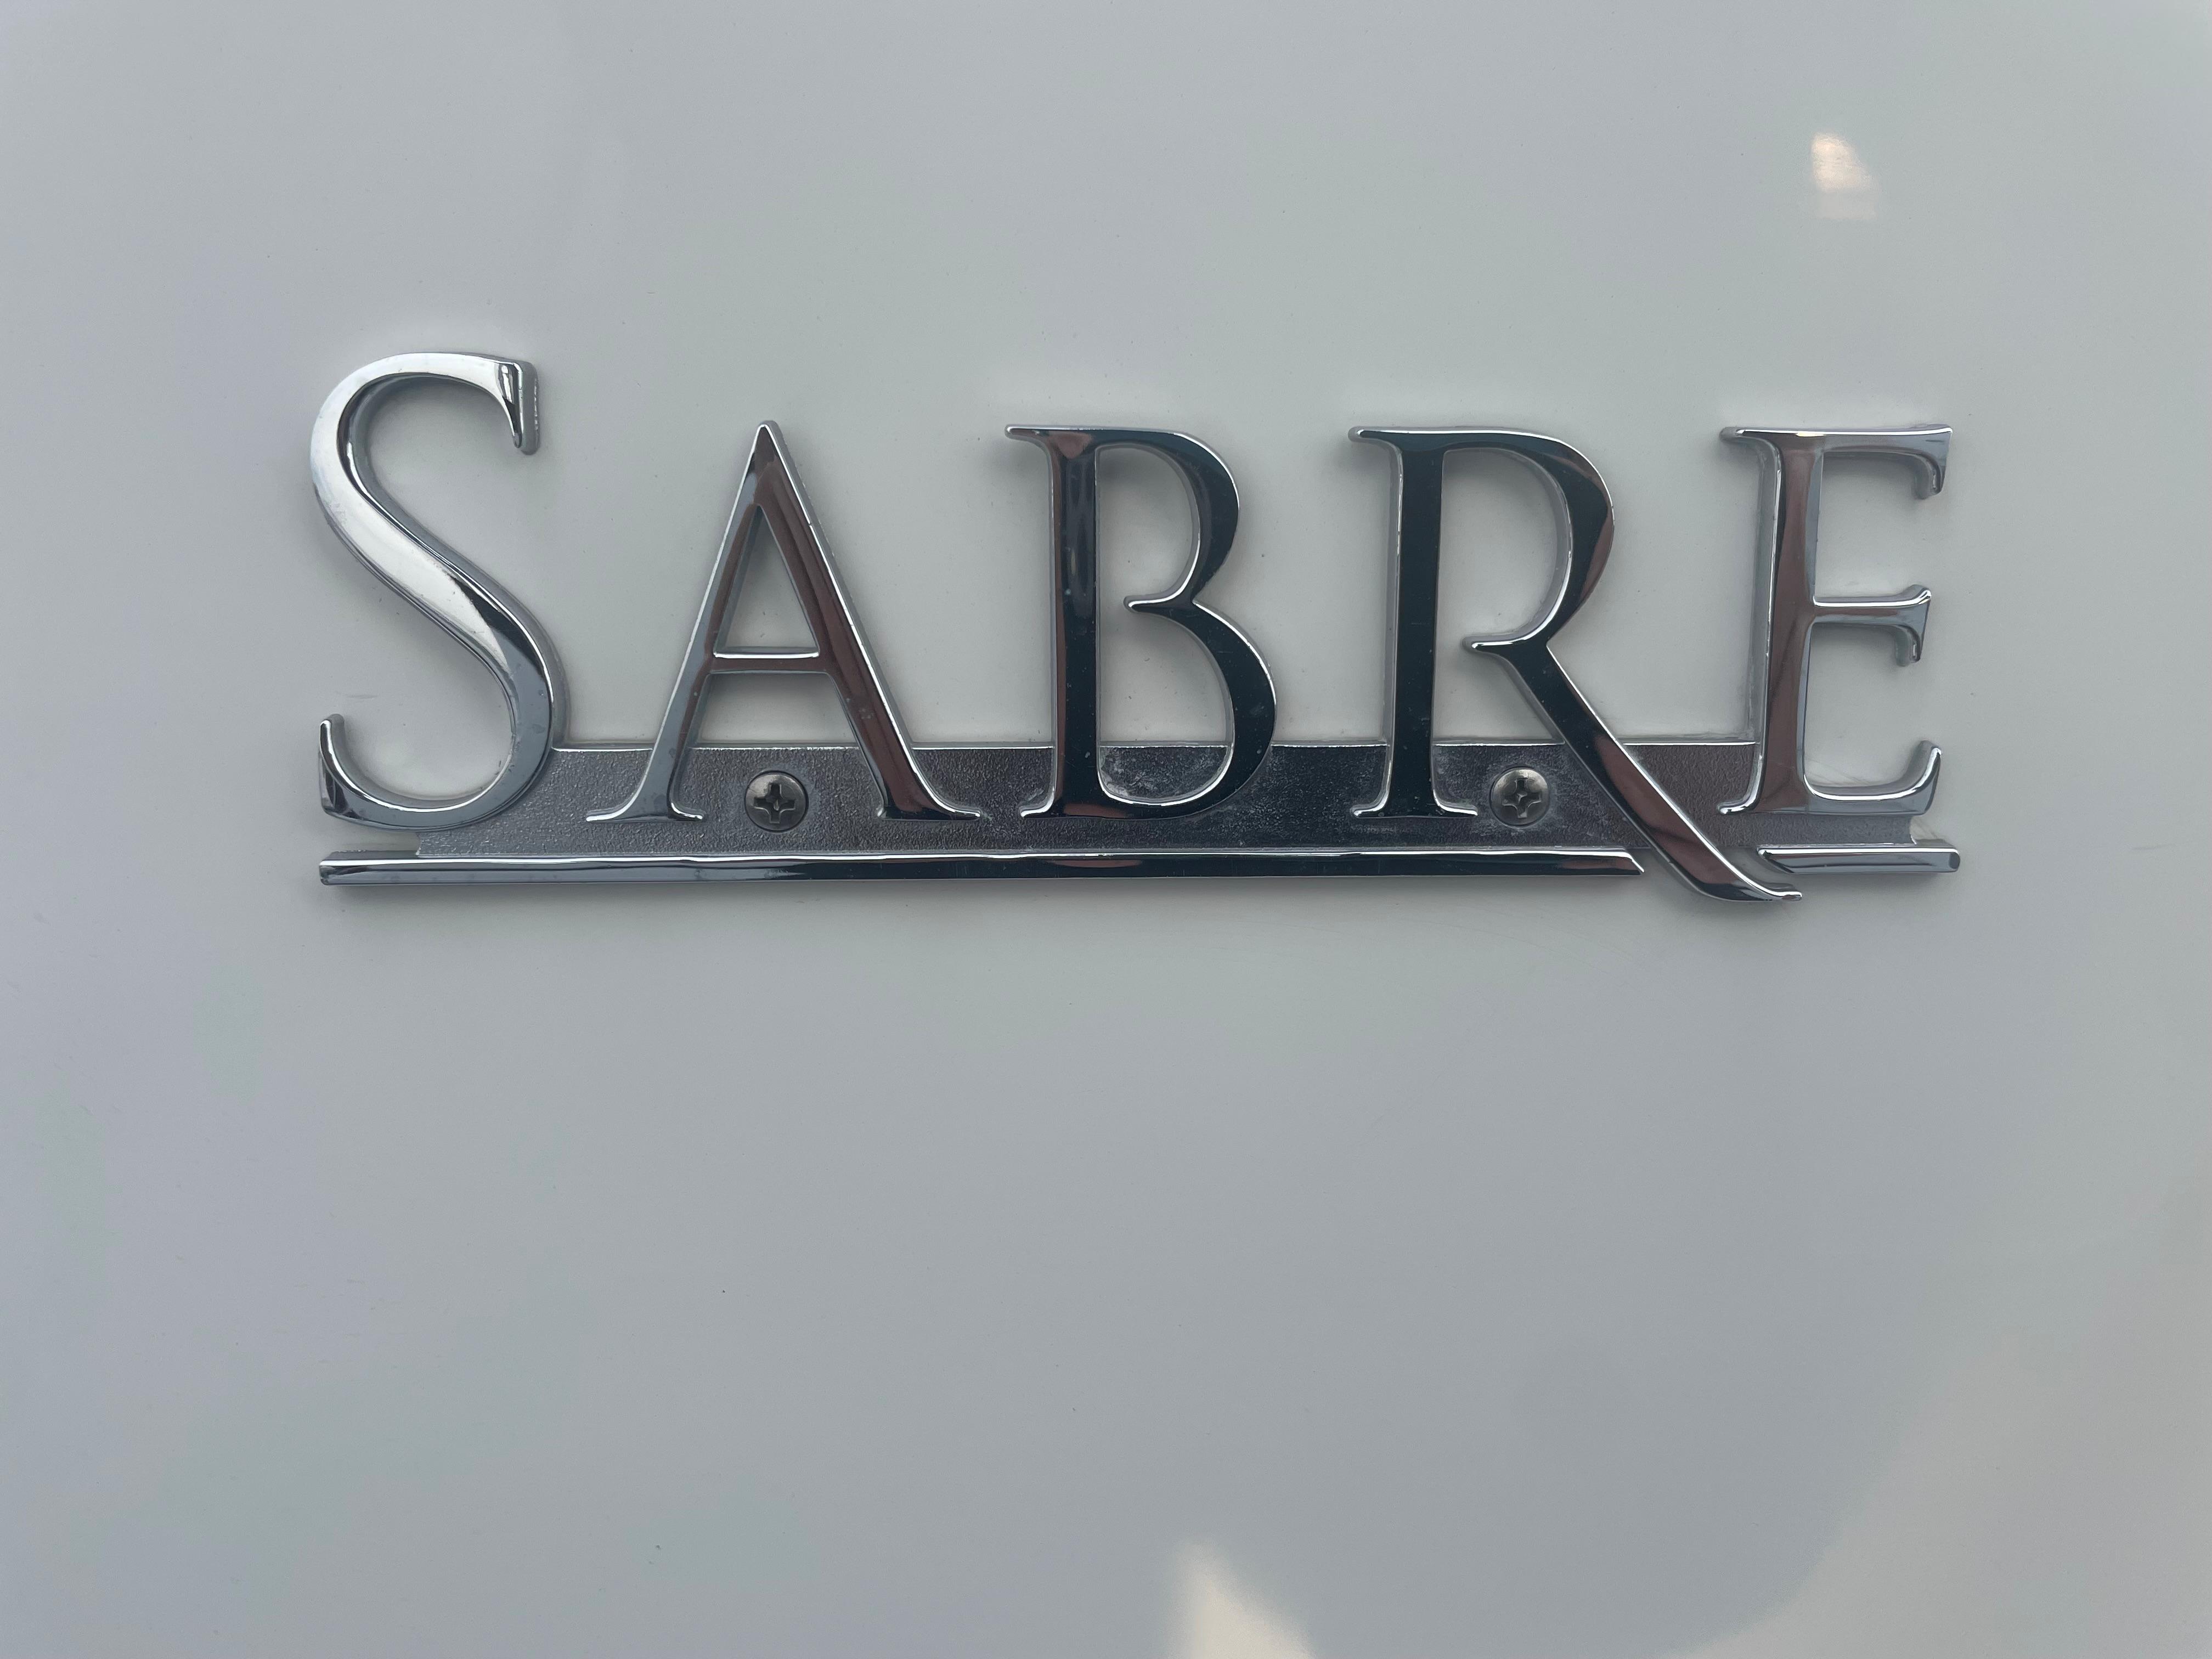 Sabre Emblem